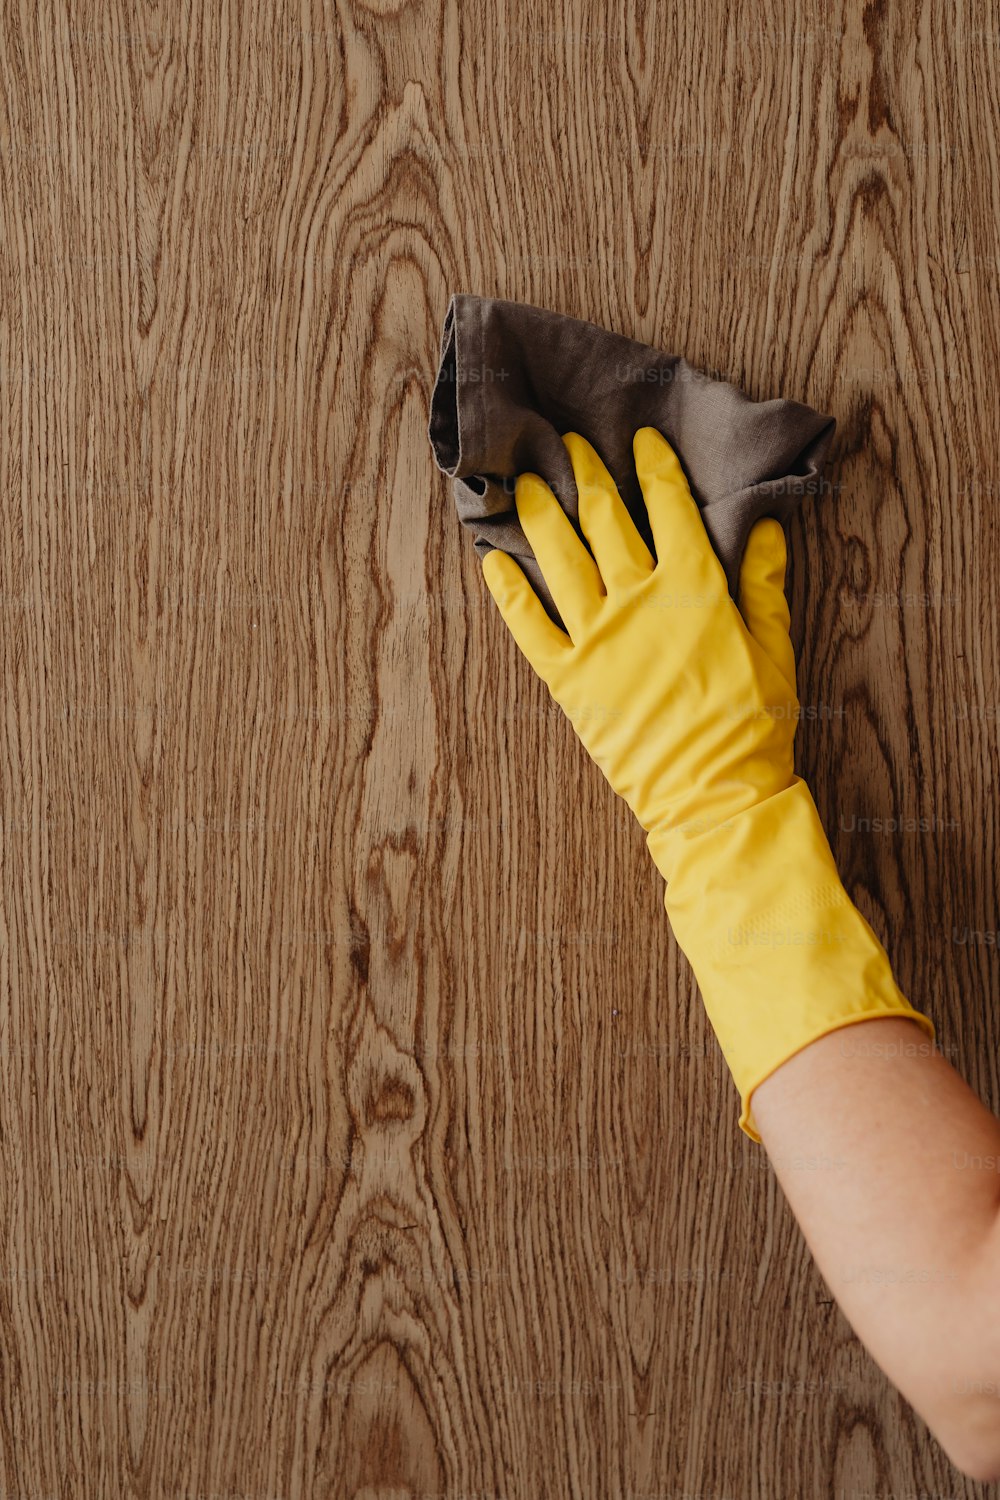 una persona che indossa guanti gialli che pulisce una superficie di legno